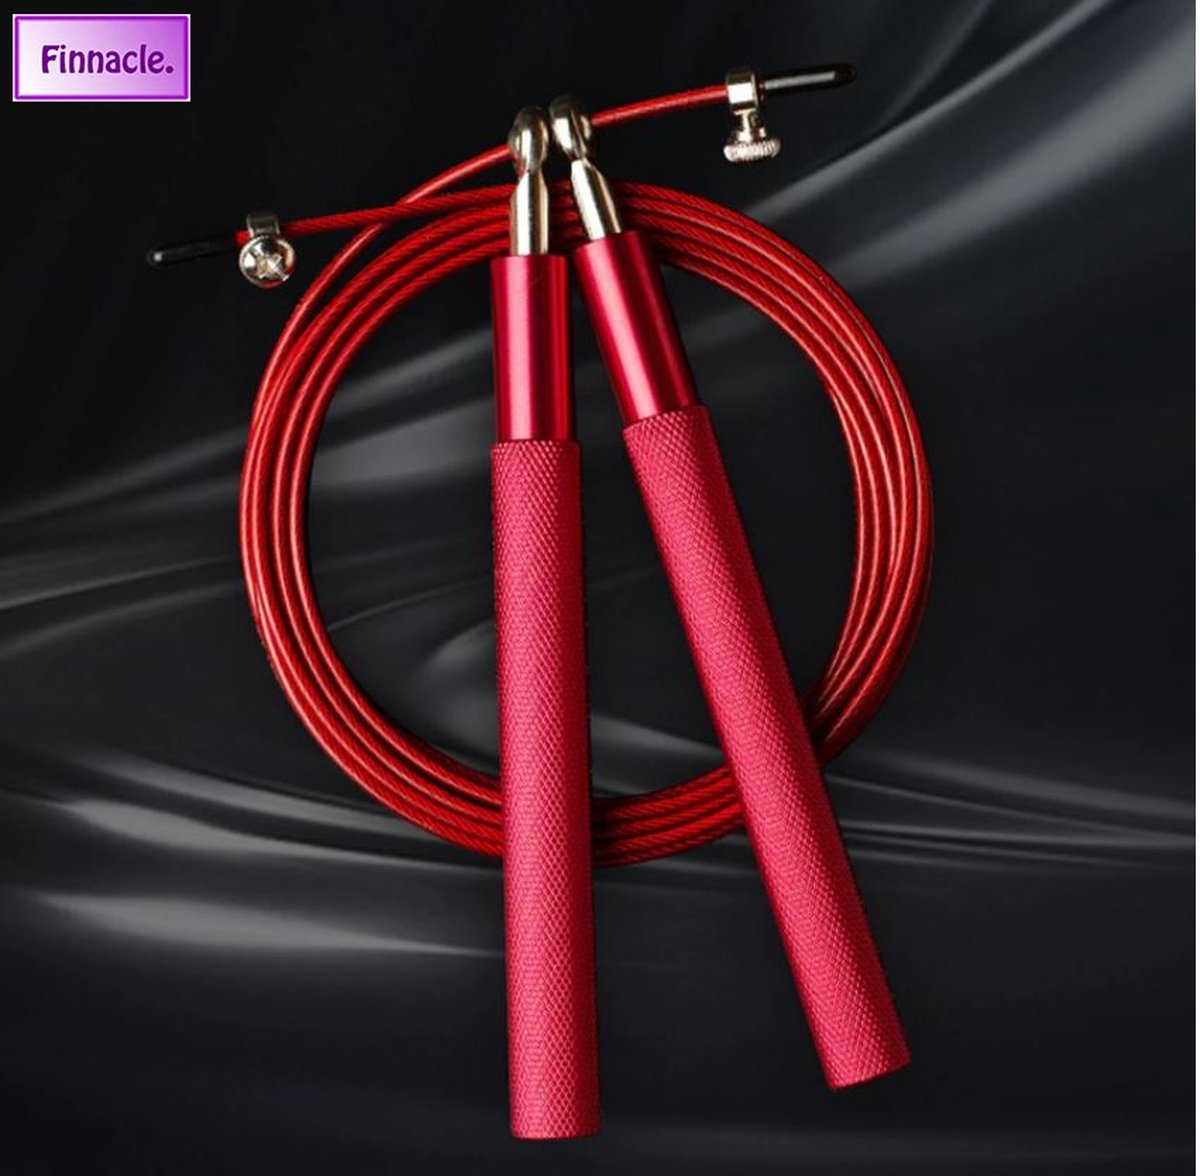 Finnacle - Springtouw - Jump rope - Crossfit - Hoge Snelheid - Duurzaam Staal Slijtvast ontwerp - Rood